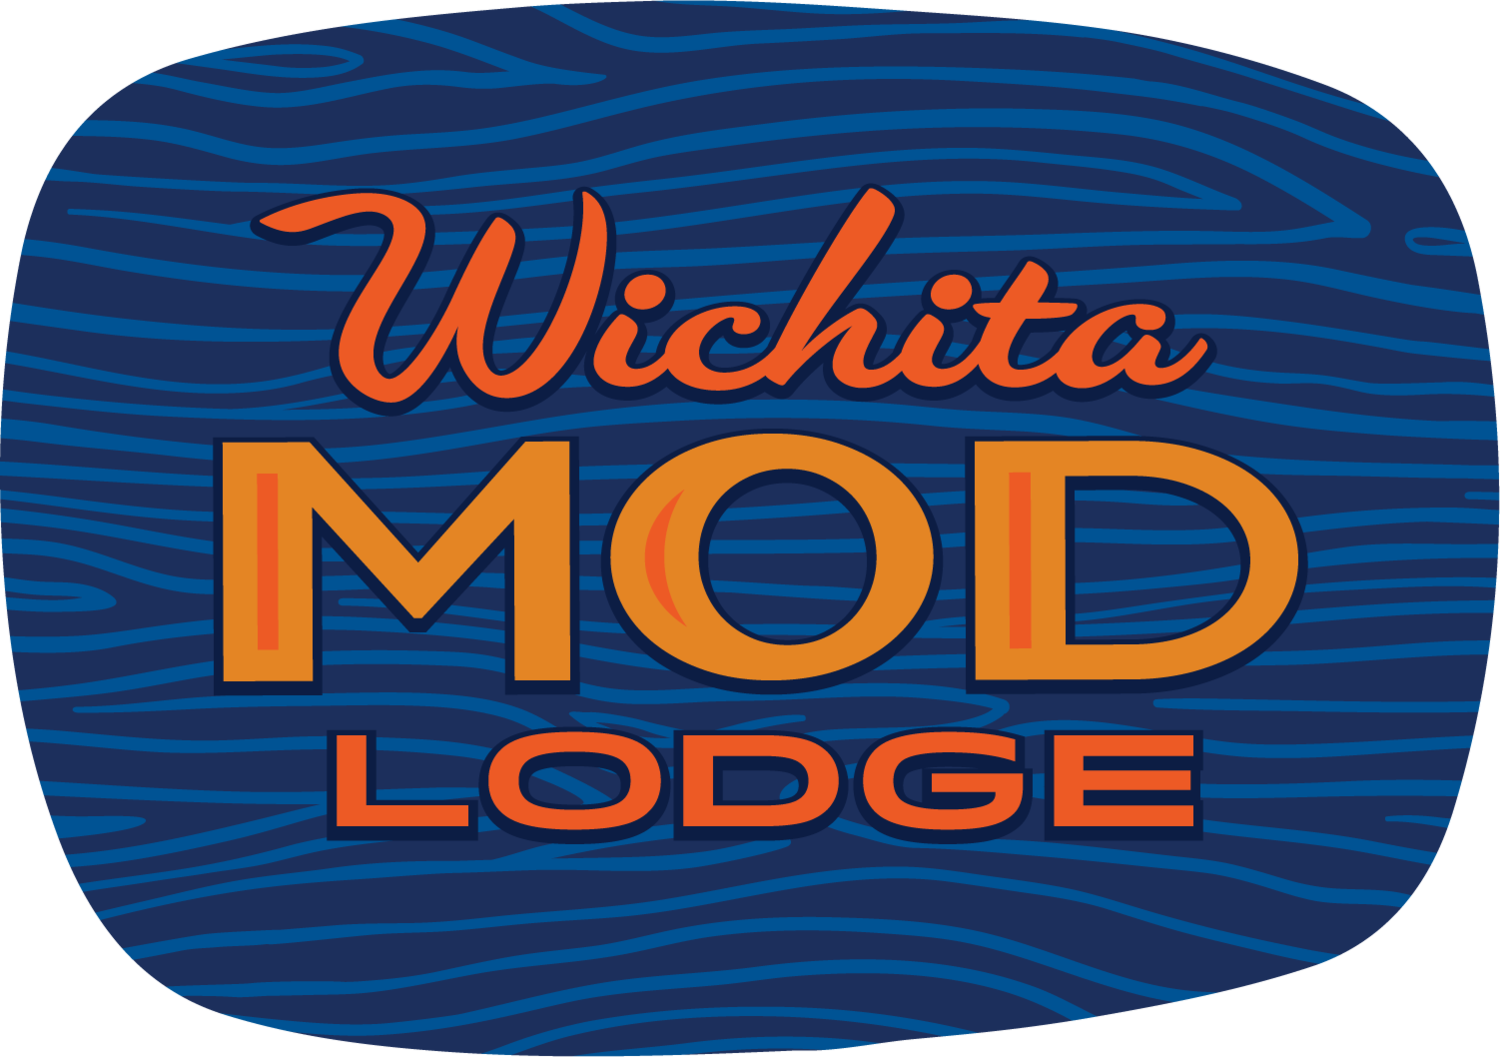 Wichita Mod Lodge